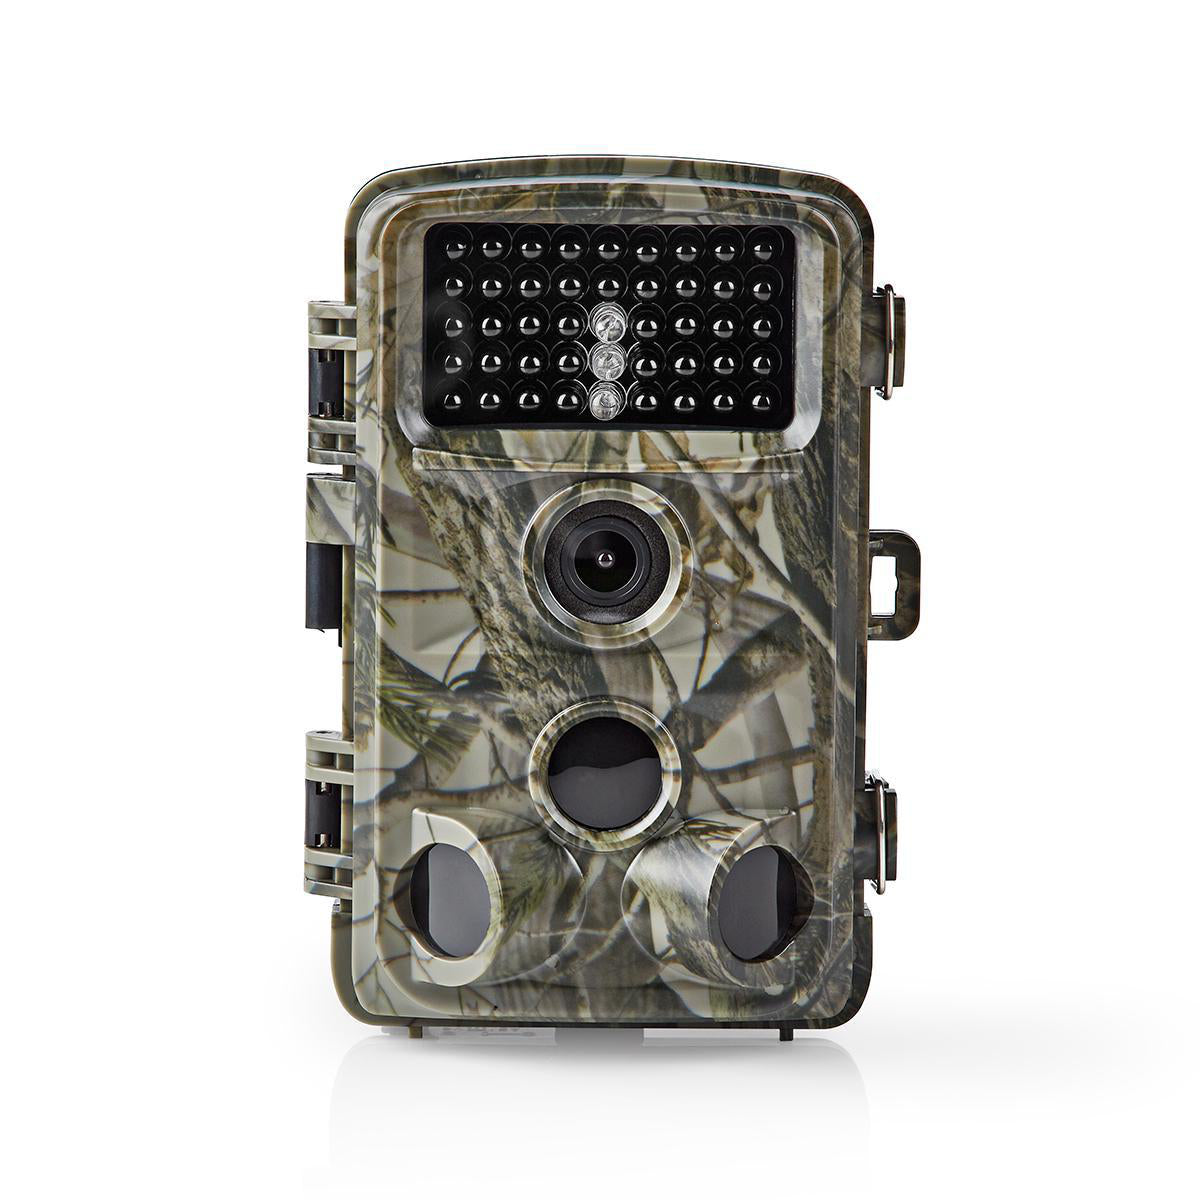 Wildlife Kamera | 1080p@30fps | 24.0 MPixel | 5 MPixel CMOS | IP66 | Schwarz No-Glow IR | Nachtsicht | Blickwinkel: 90 ° | Bewegungssensor | Erfassungswinkel: 120 ° | Erfassungsbereich: 20.0 m | Monitorgröße: 2.4 " | LCD Screen | Braun / Grün